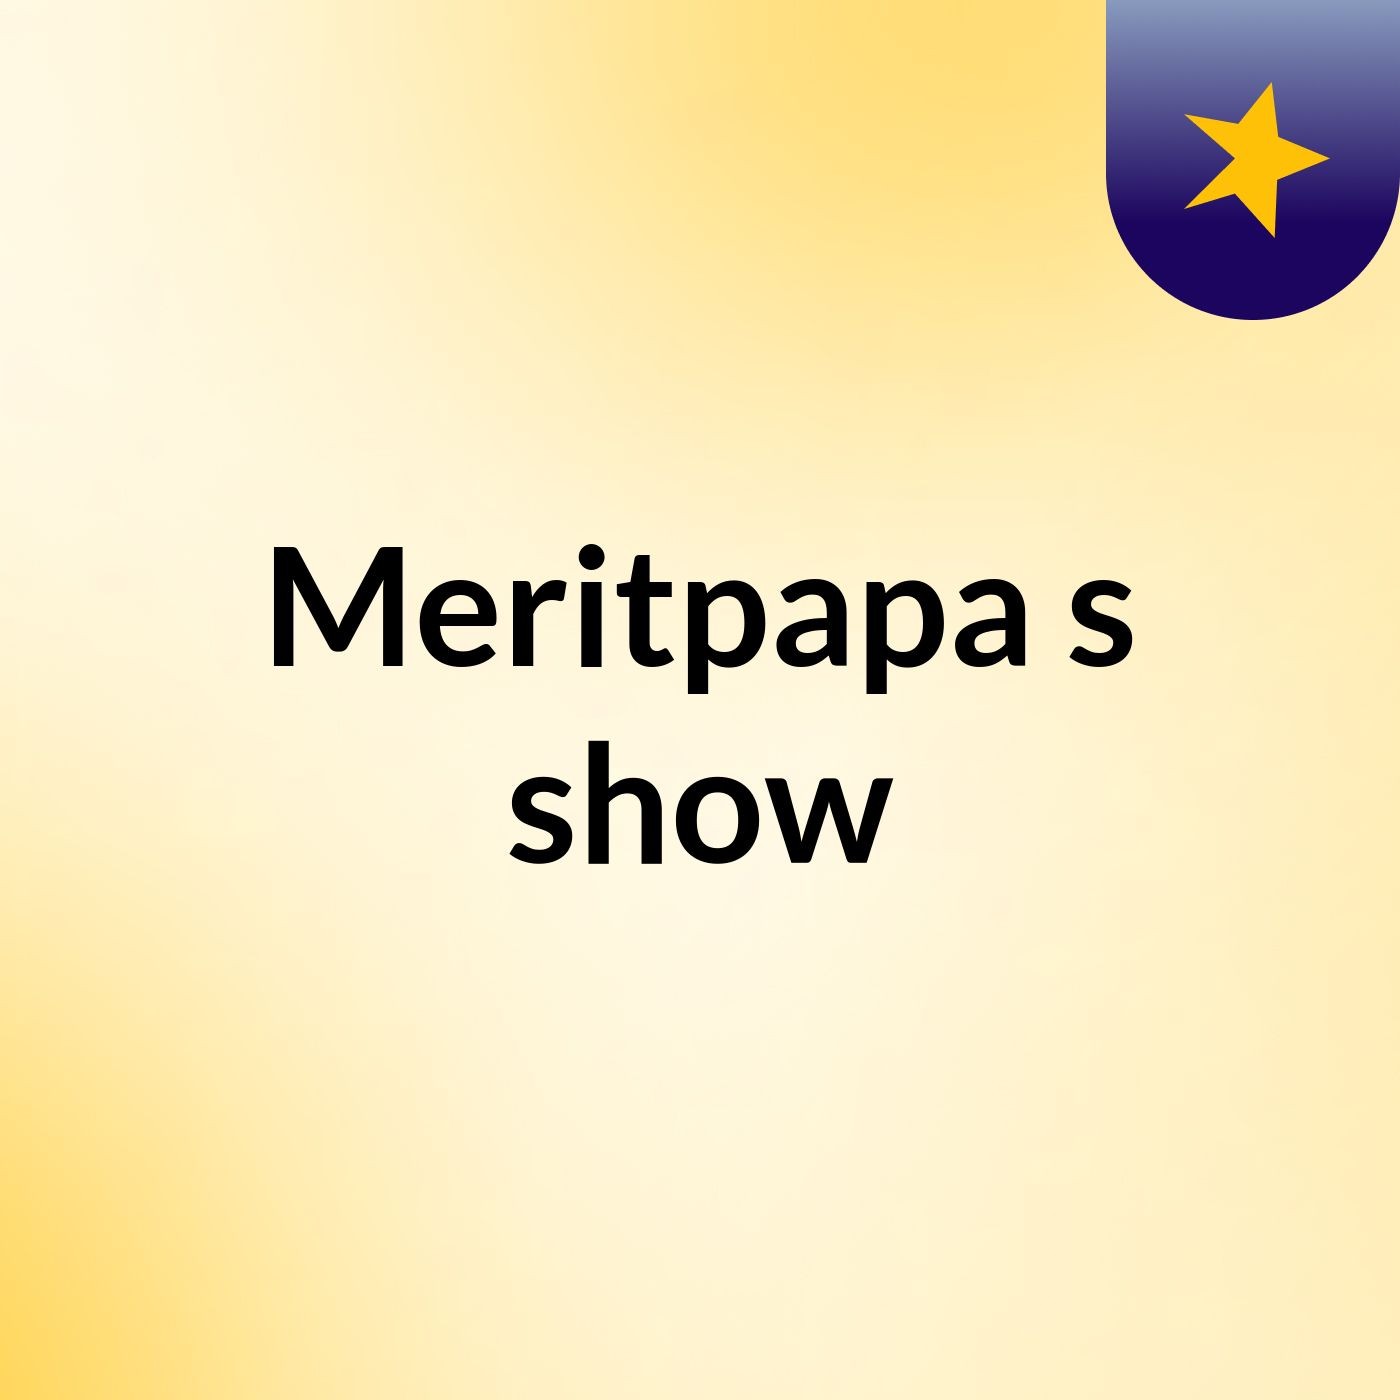 Episode 3 - Meritpapa's show